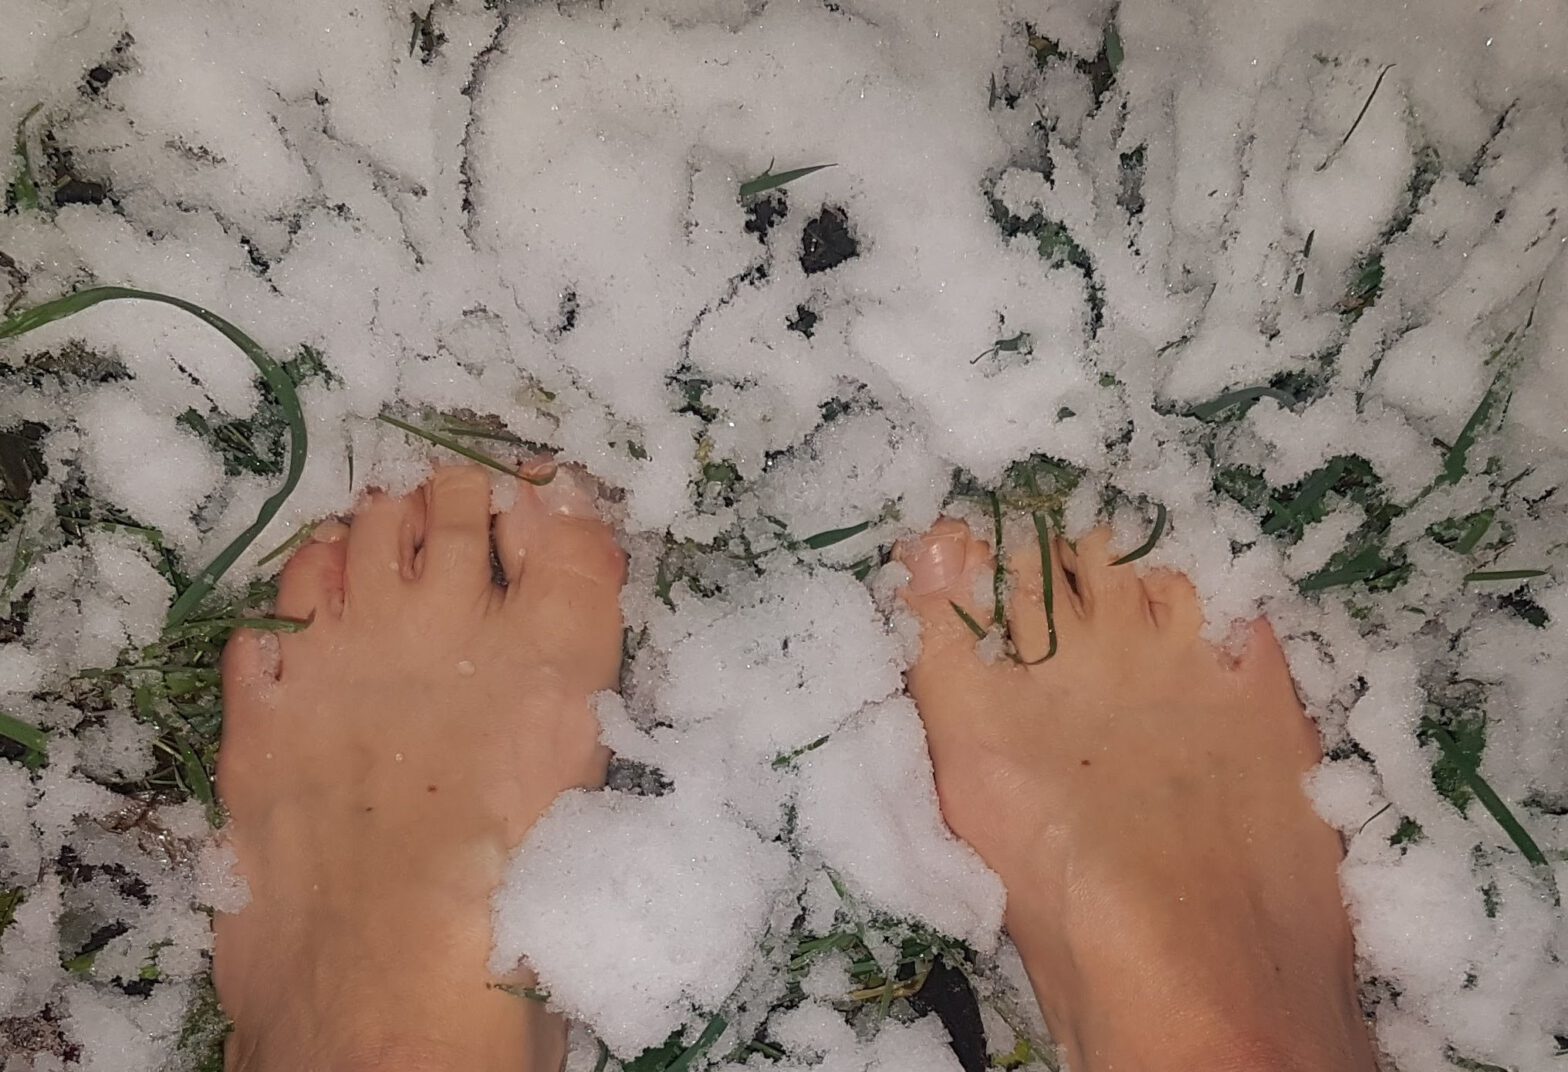 Nackte Füße in frischem Schnee auf Gras, Blick von oben